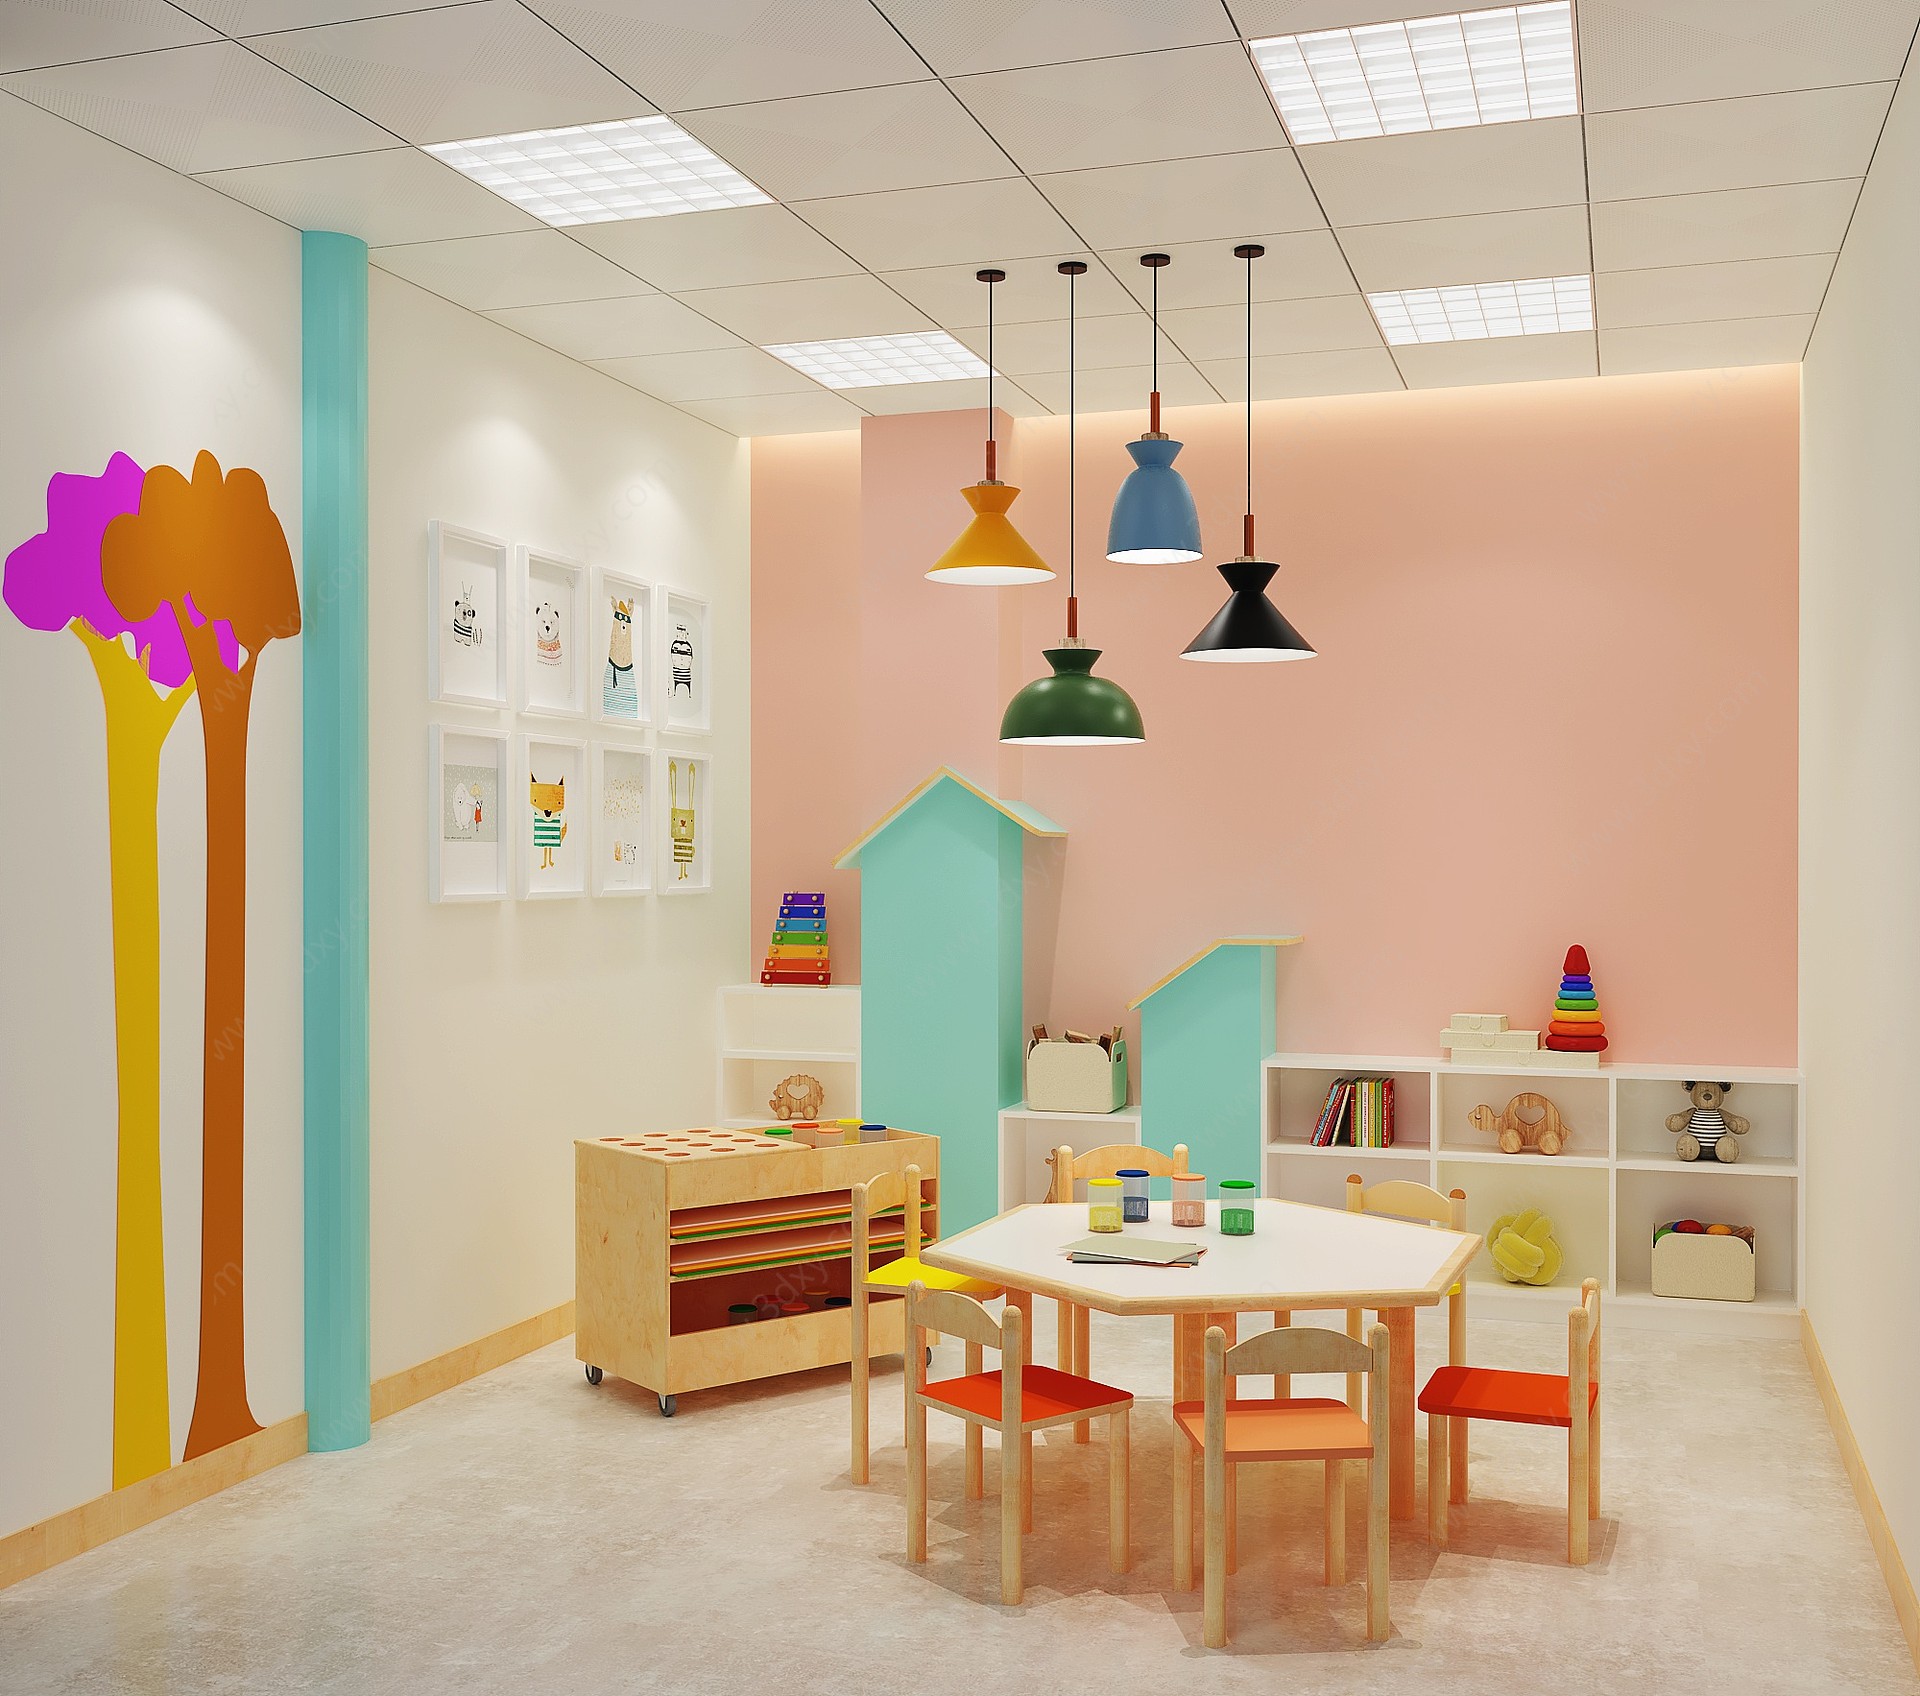 现代幼儿园教室活动室3D模型